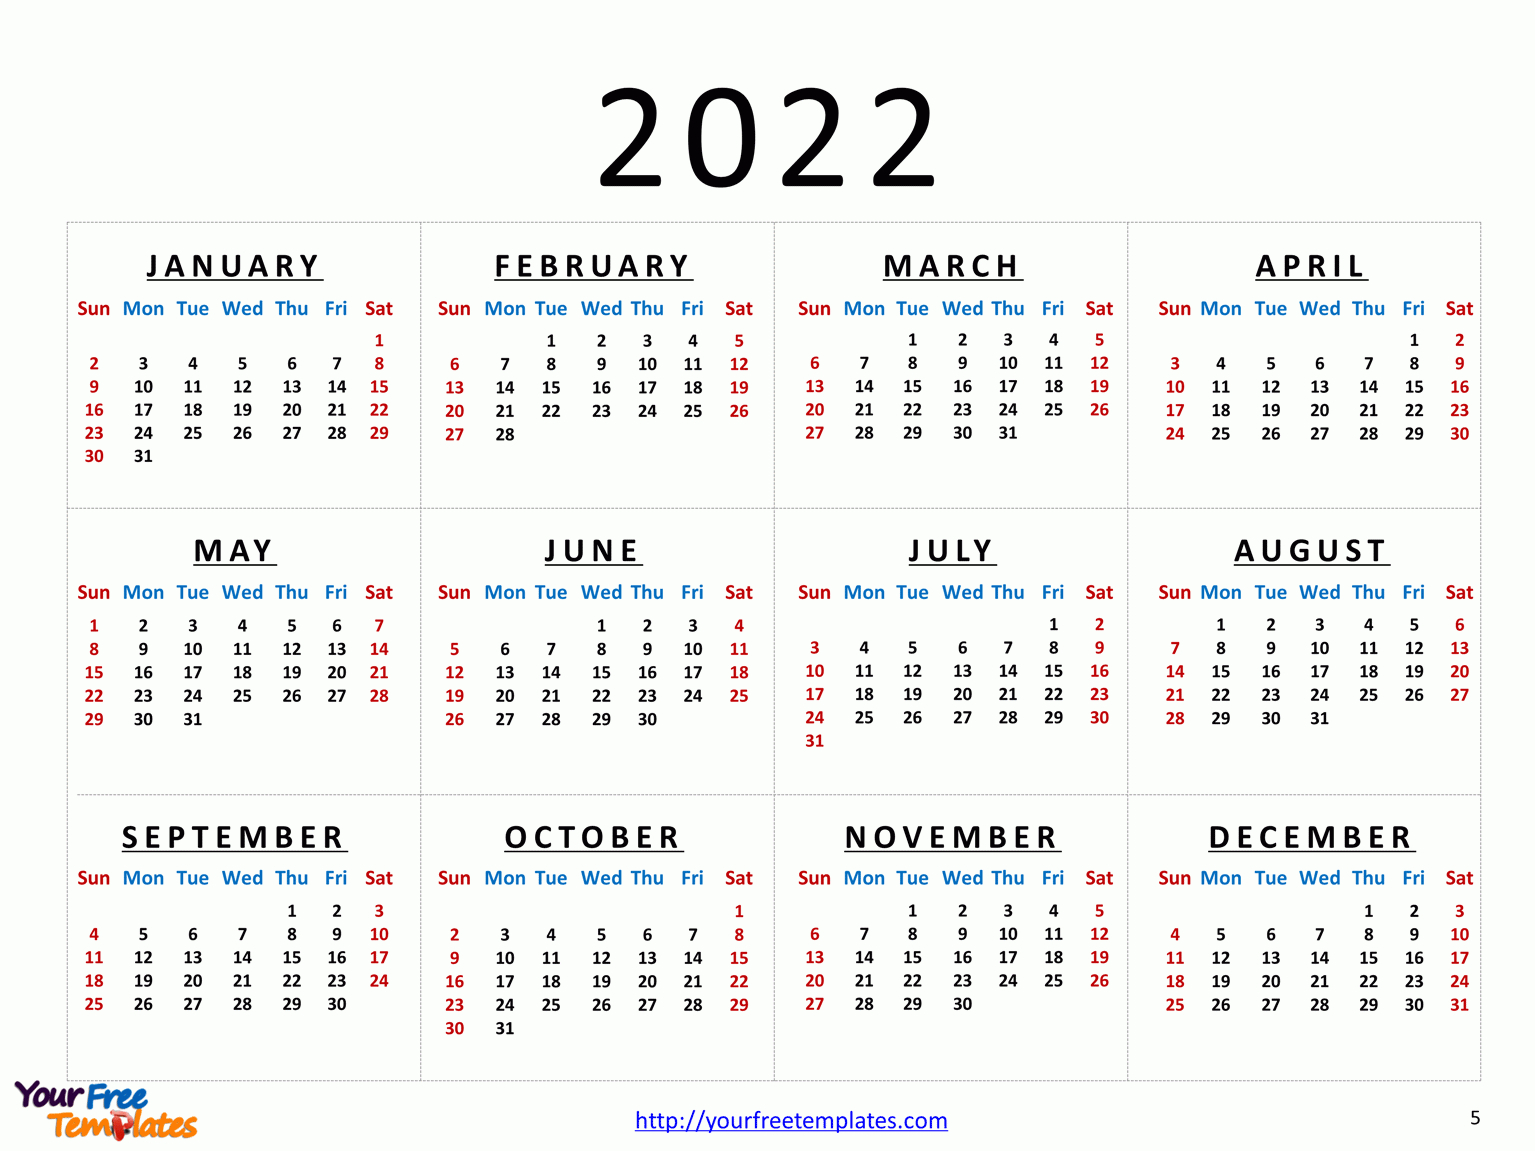 Calendar-2022-5 - Free Powerpoint Template